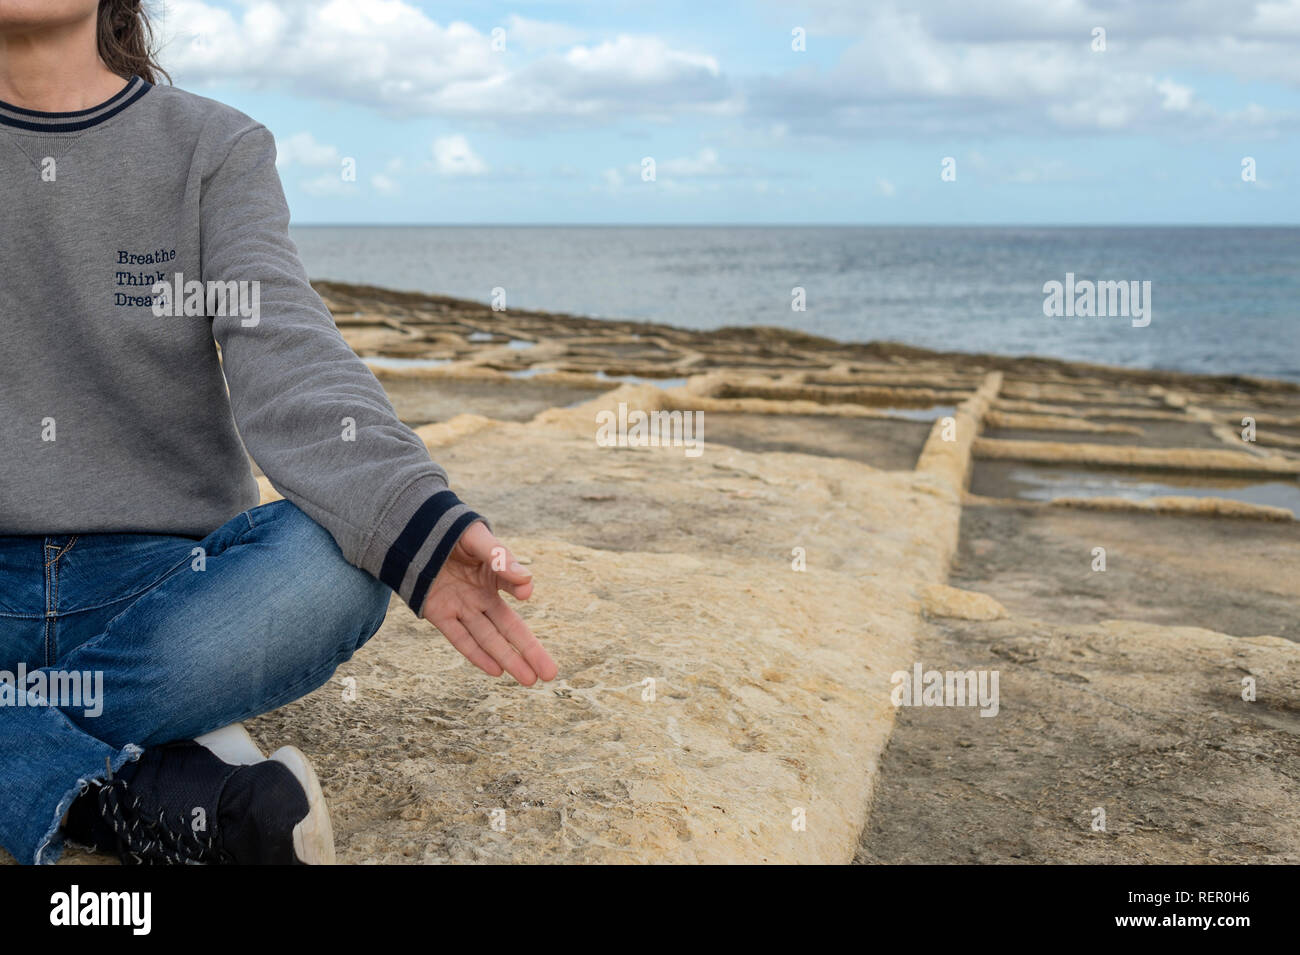 In prossimità di una donna meditando sul mare indossando una felpa con lo slogan "respirare, pensare, sogno" Foto Stock